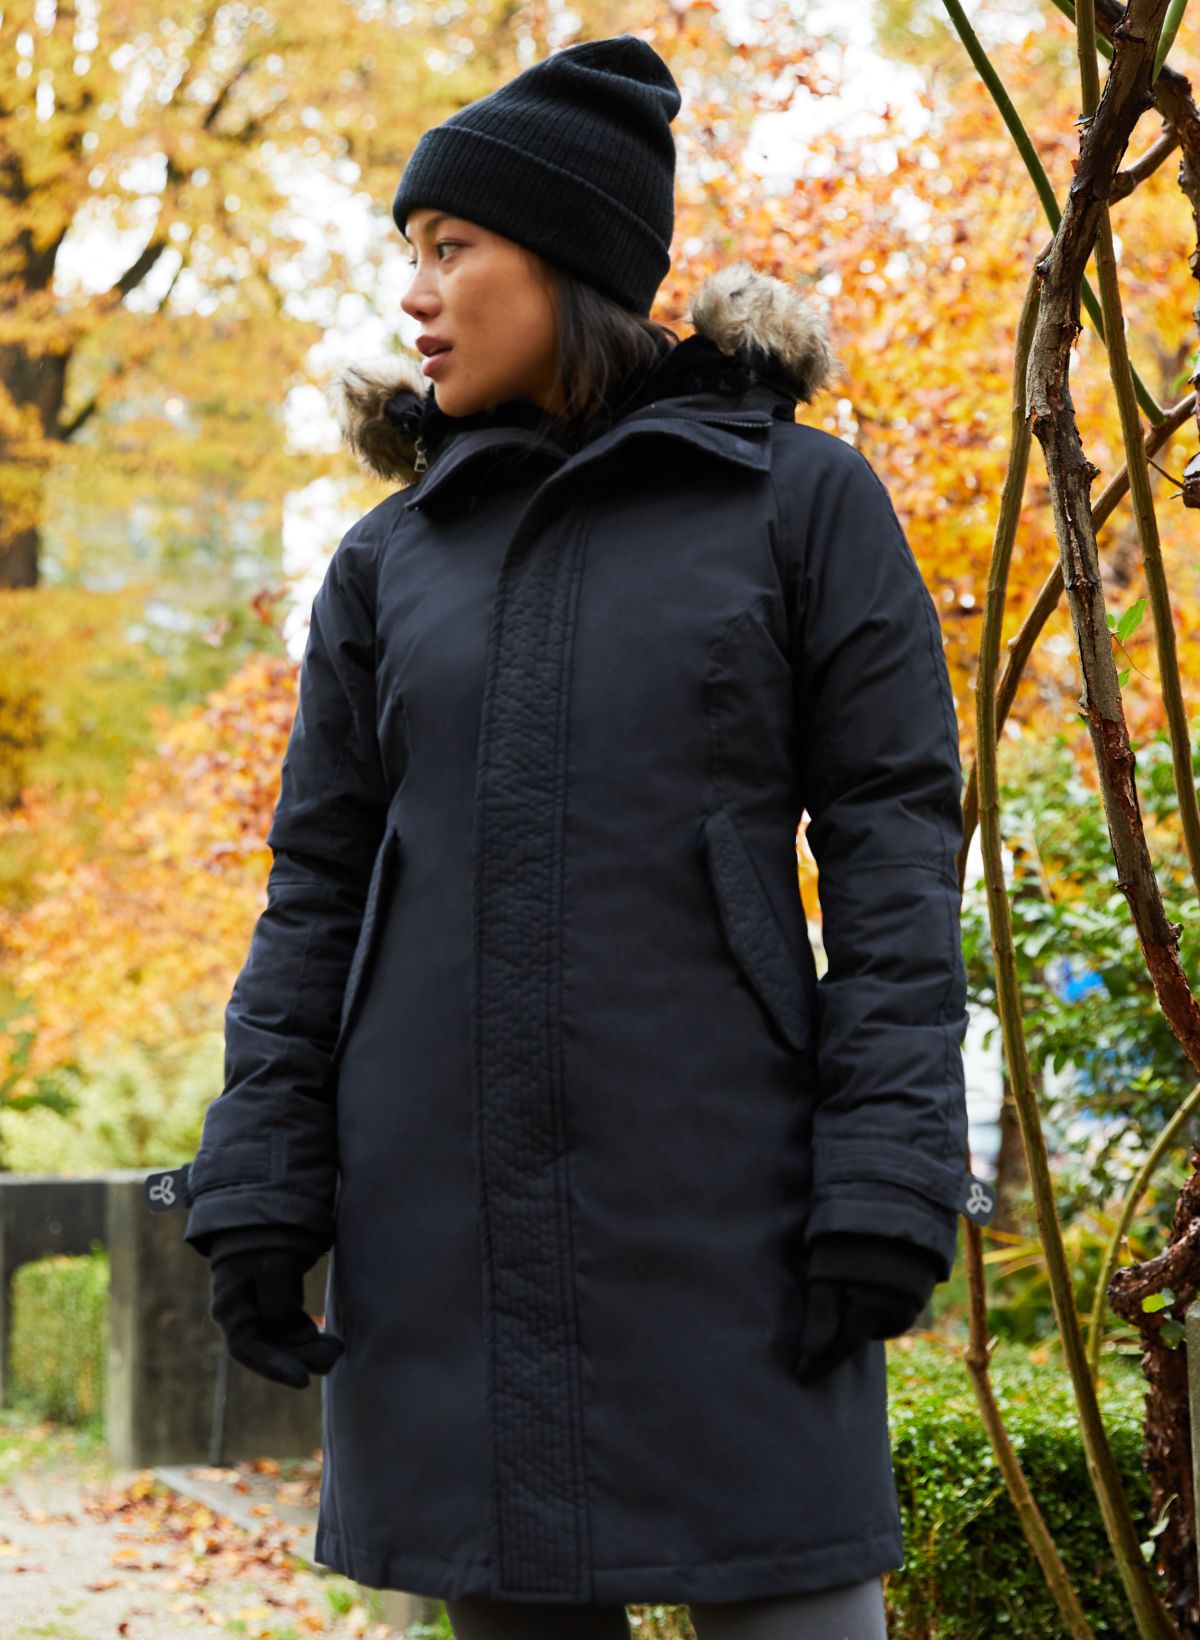 Personalized Warmplus Water Repellent Polartec Fleece Jacket